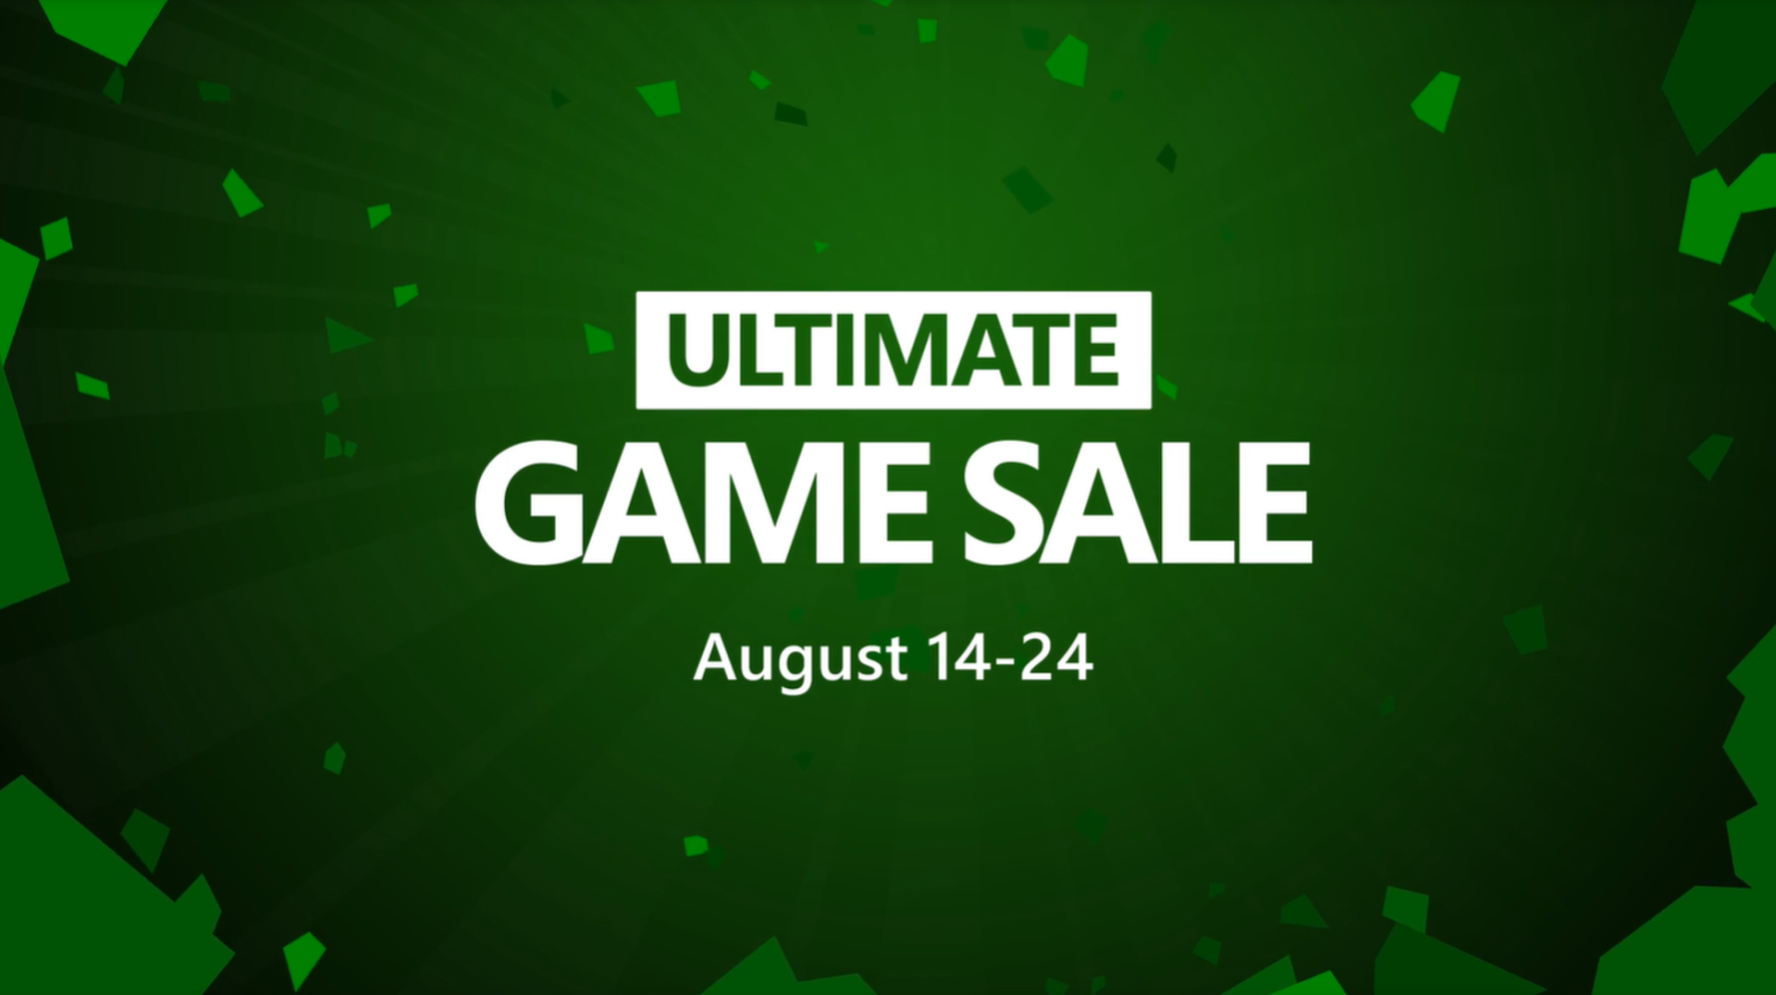 Xboxセール アルティメットゲームセールが開催中 夏はゲームを楽しもう 8月25日まで Wpteq